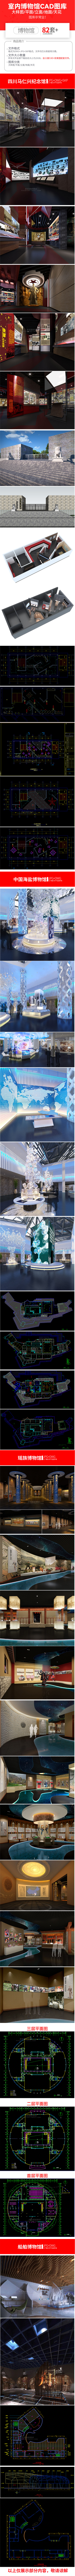 82套室内设计博物馆CAD施工图方案平立面效果图展览馆展厅纪念馆展馆 设计素材 第2张